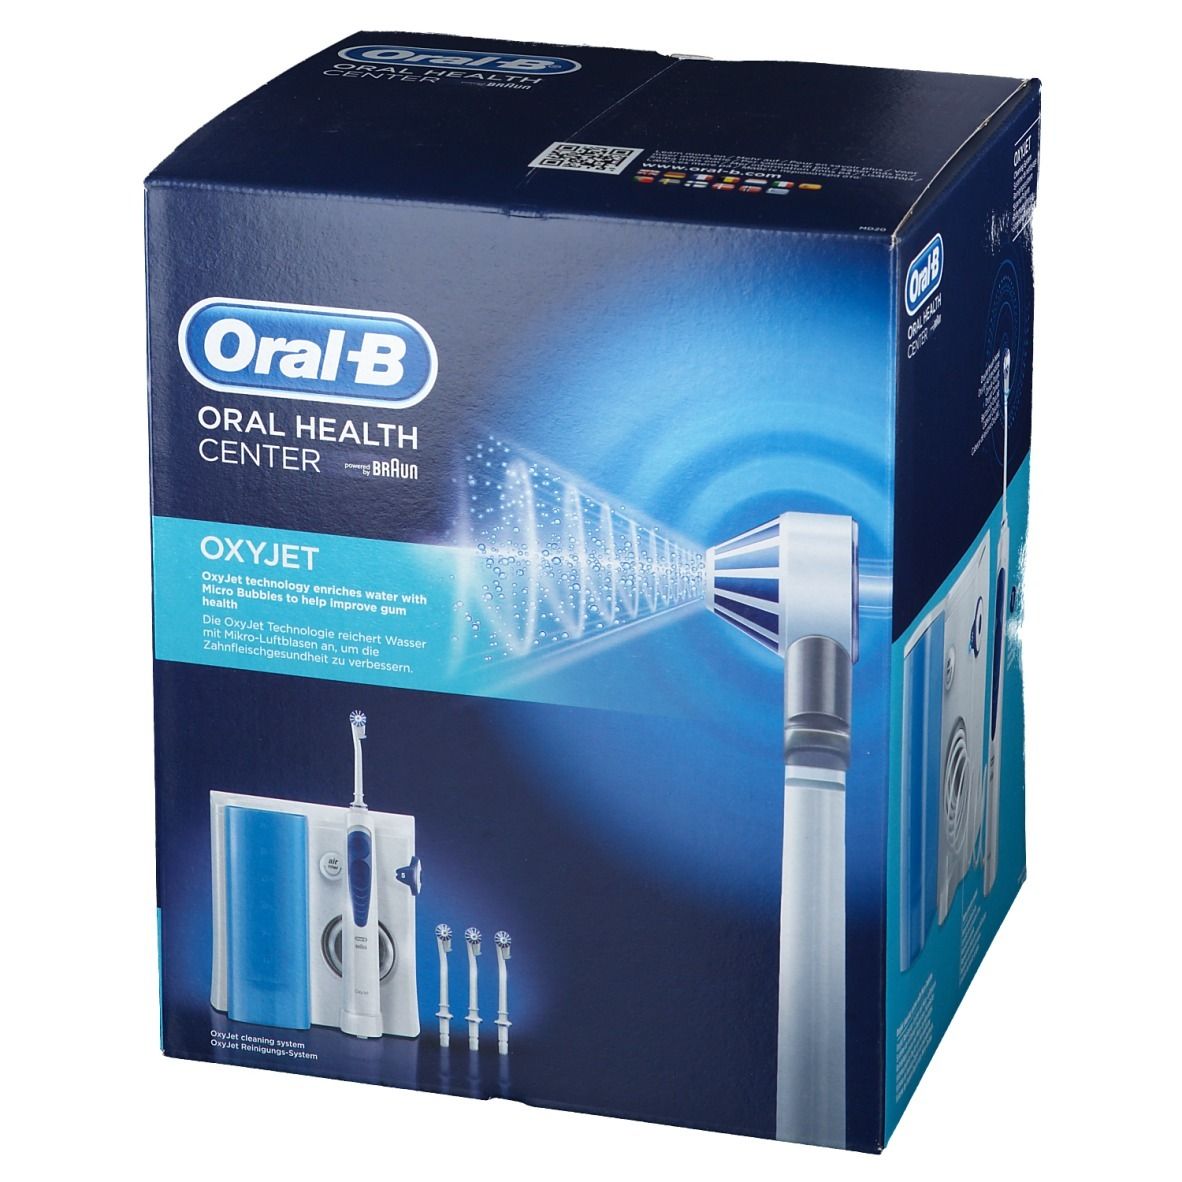 Idropulsore e spazzolino elettrico - BRAUN OC20 Oral-B Health Center.  Larghezza: 17,1 cm, Profondità: 23,3 cm, Altezza: 23,2 cm